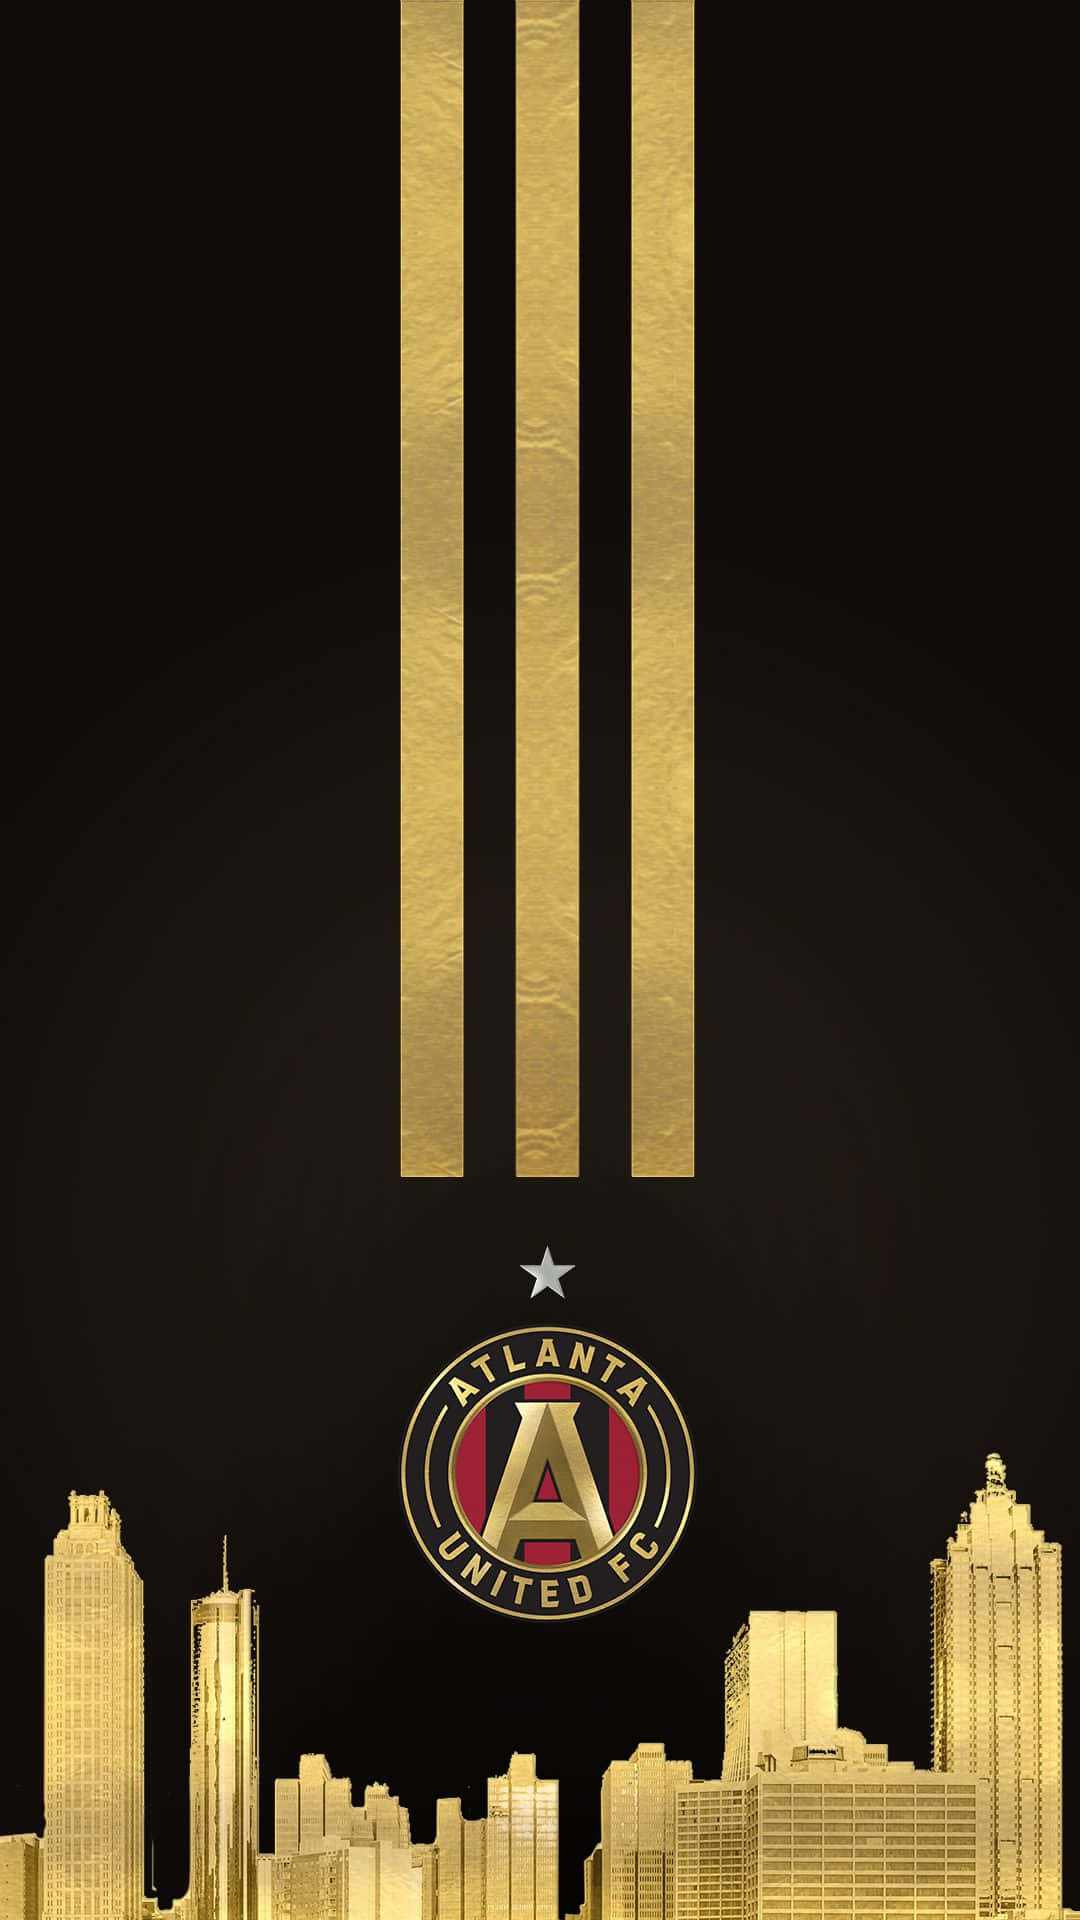 Logodel Atlanta United Fc En Dorado. Fondo de pantalla